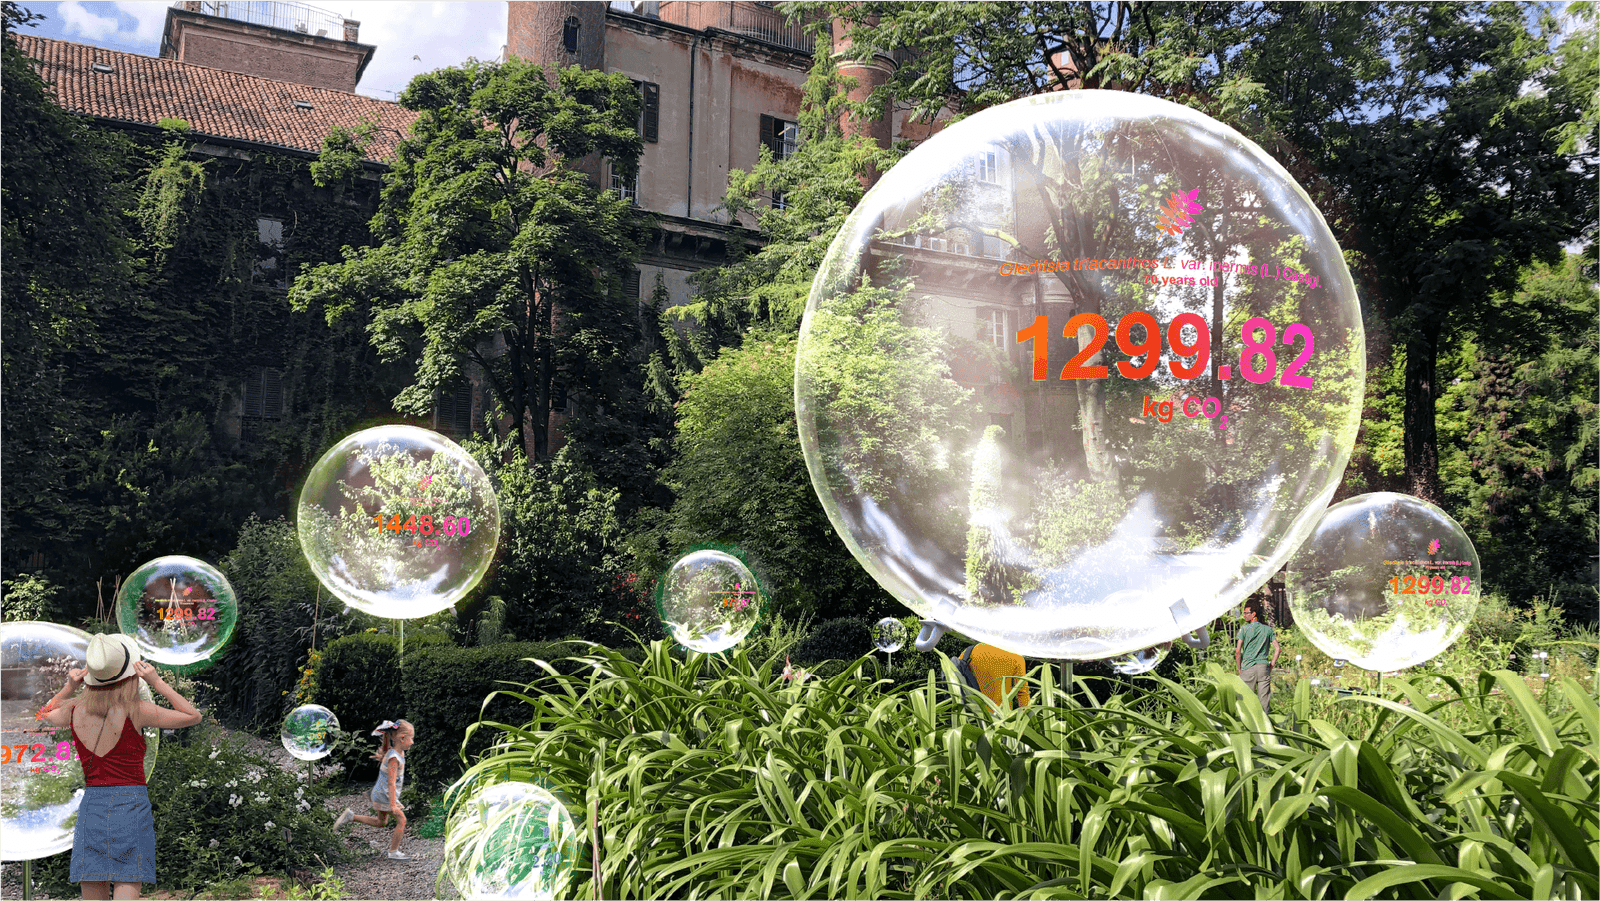 Carlo Ratti’s floating spheres at Milan Design Week